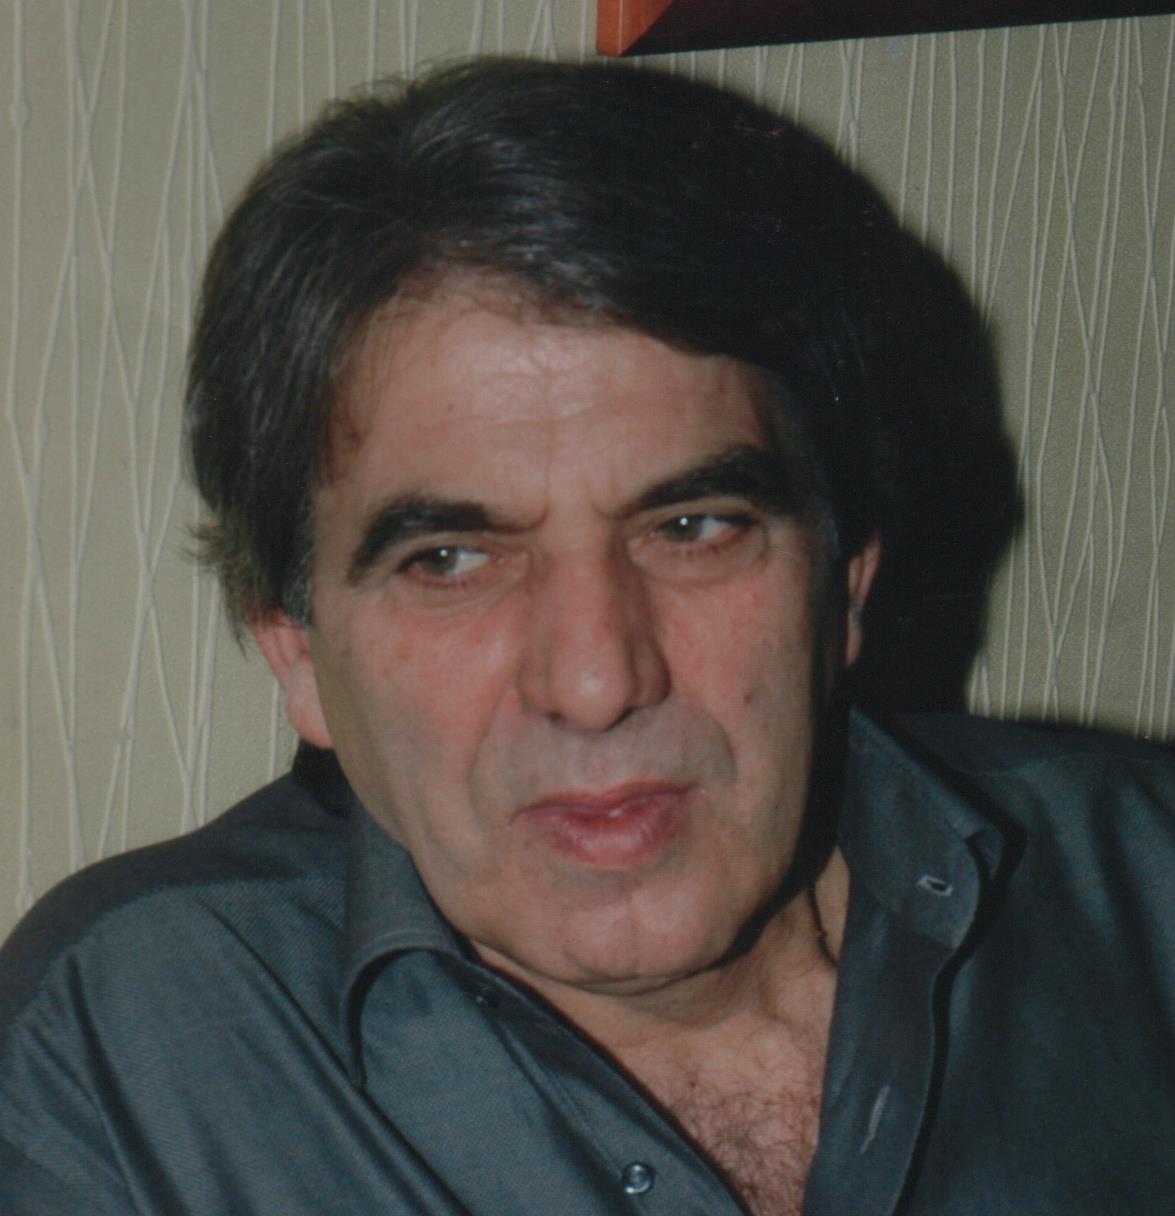 Έφυγε από την ζωή ο Δημήτριος Καραγιάννης σε ηλικία 74 ετών – Η κηδεία θα τελεστεί την Τρίτη 14 Μαρτίου